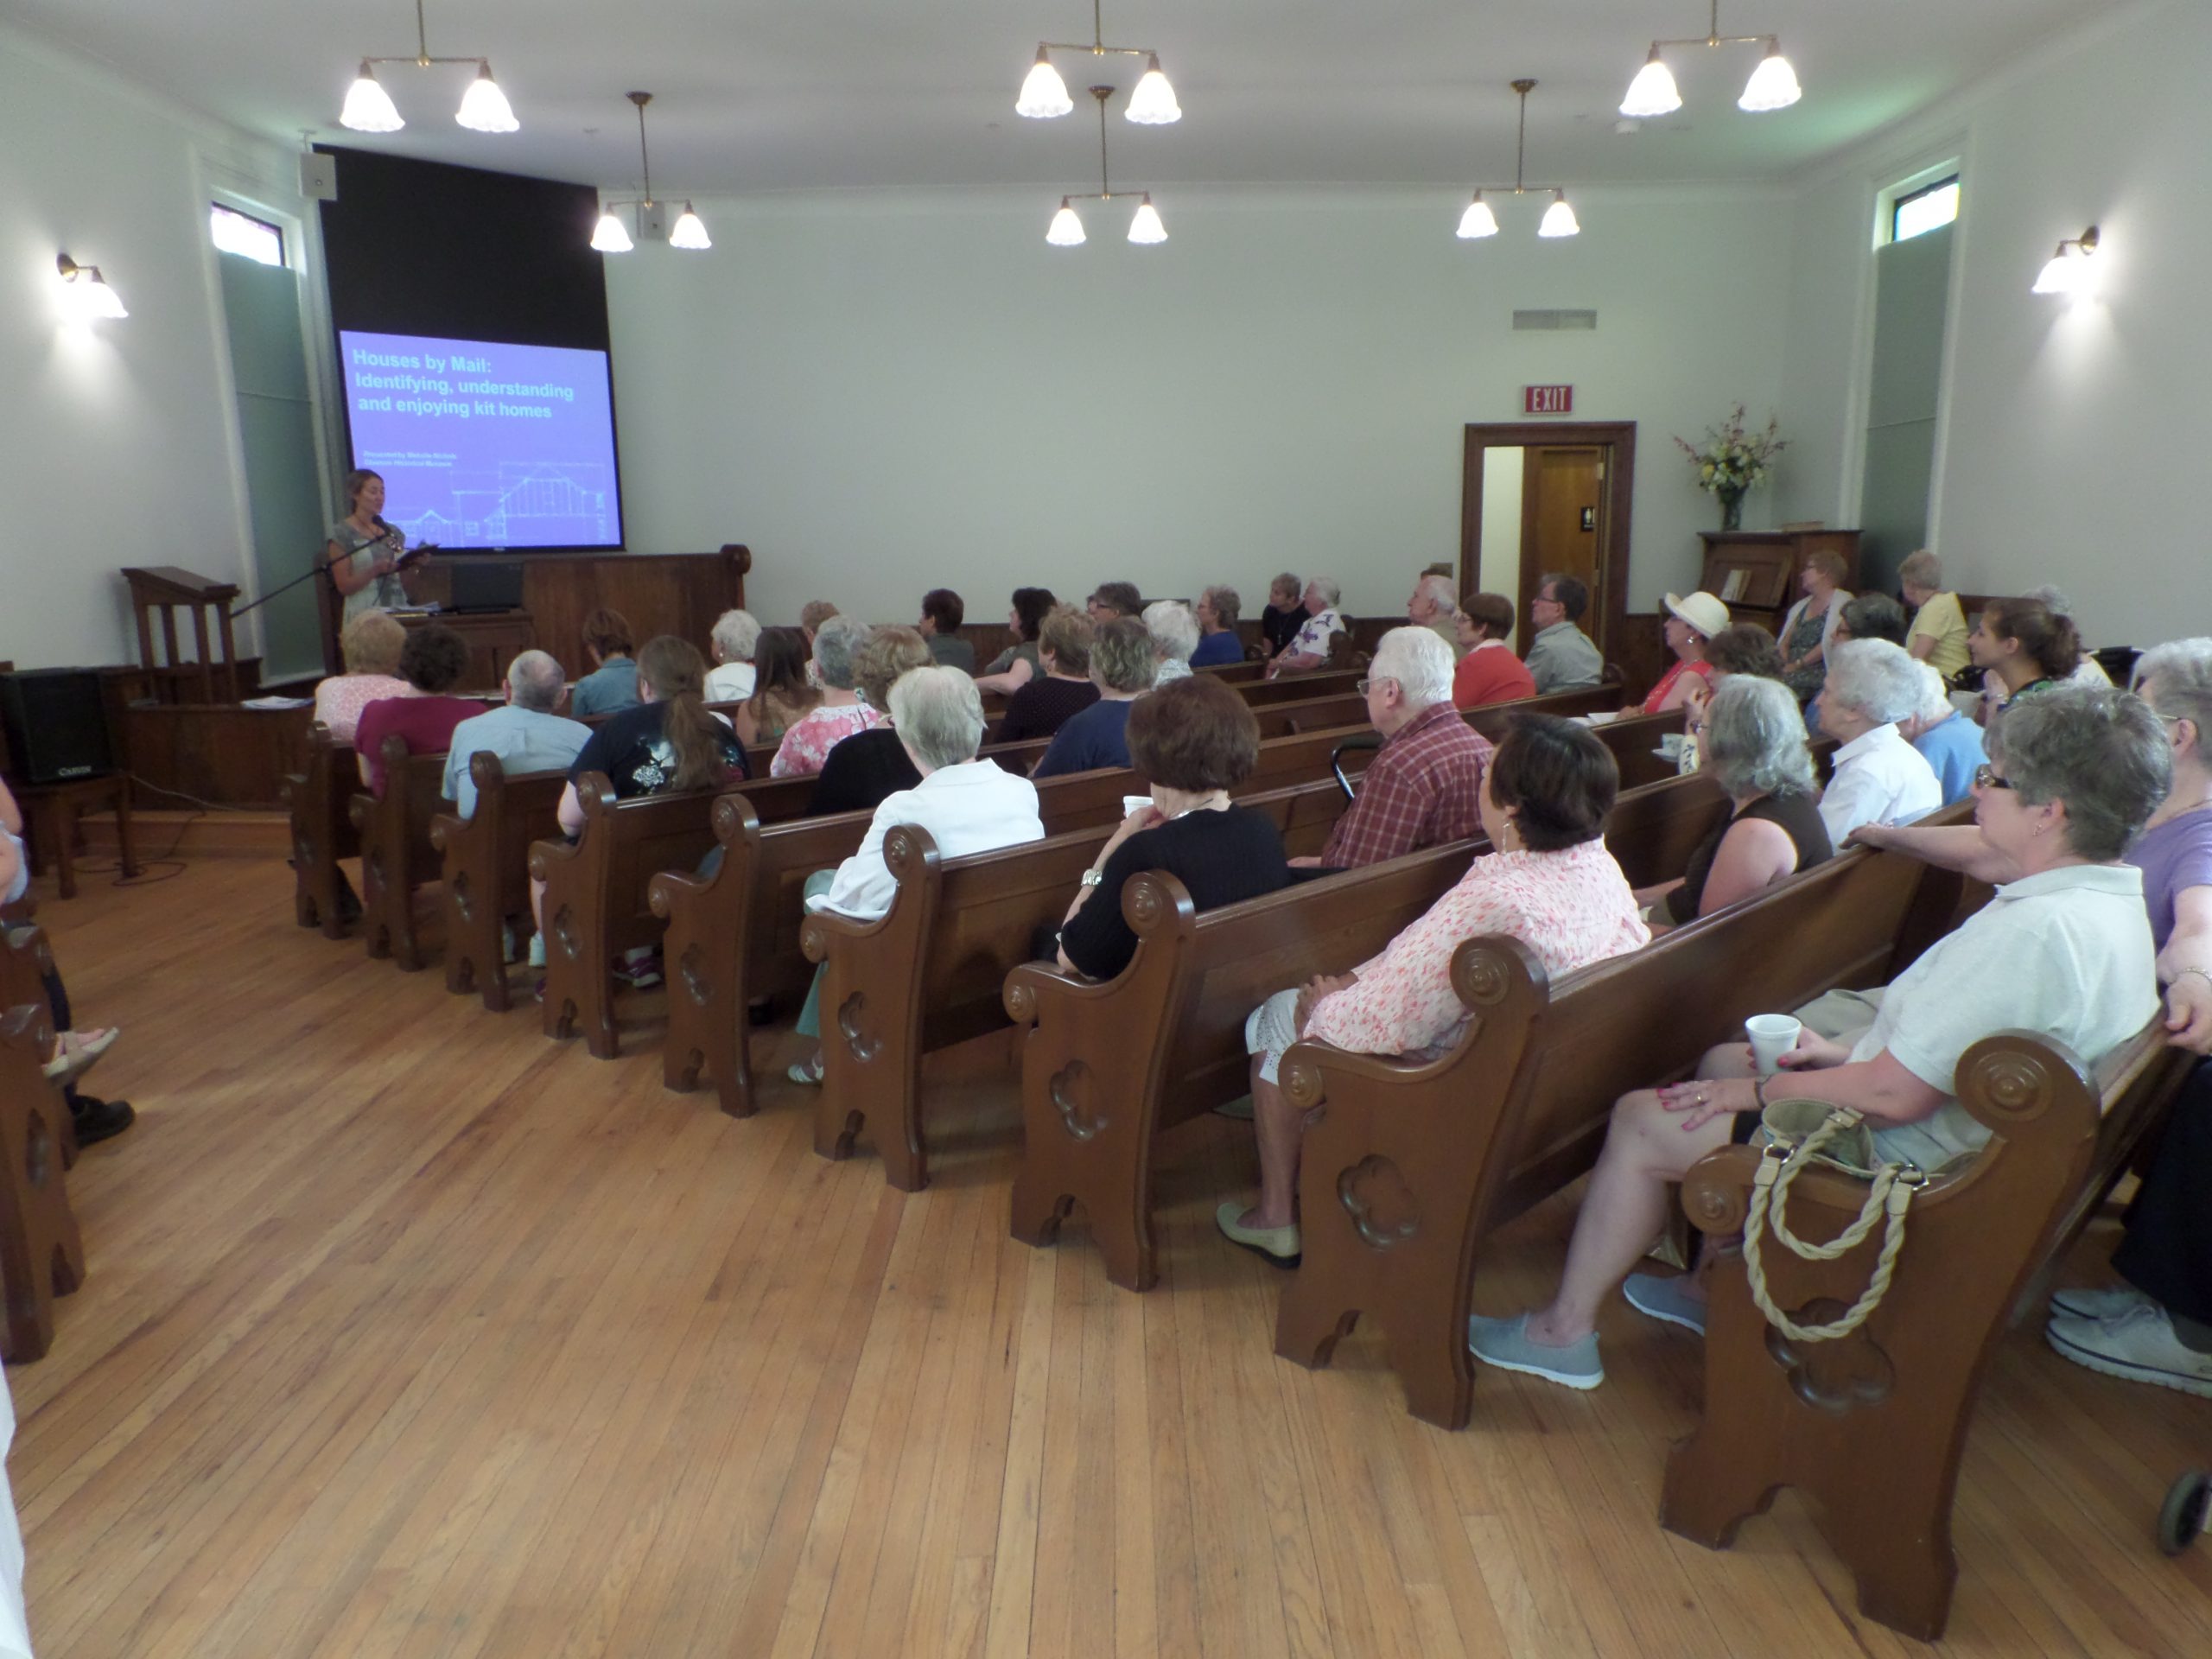 Thursday Teas - Monthly history talks inside Old Troy Church 1